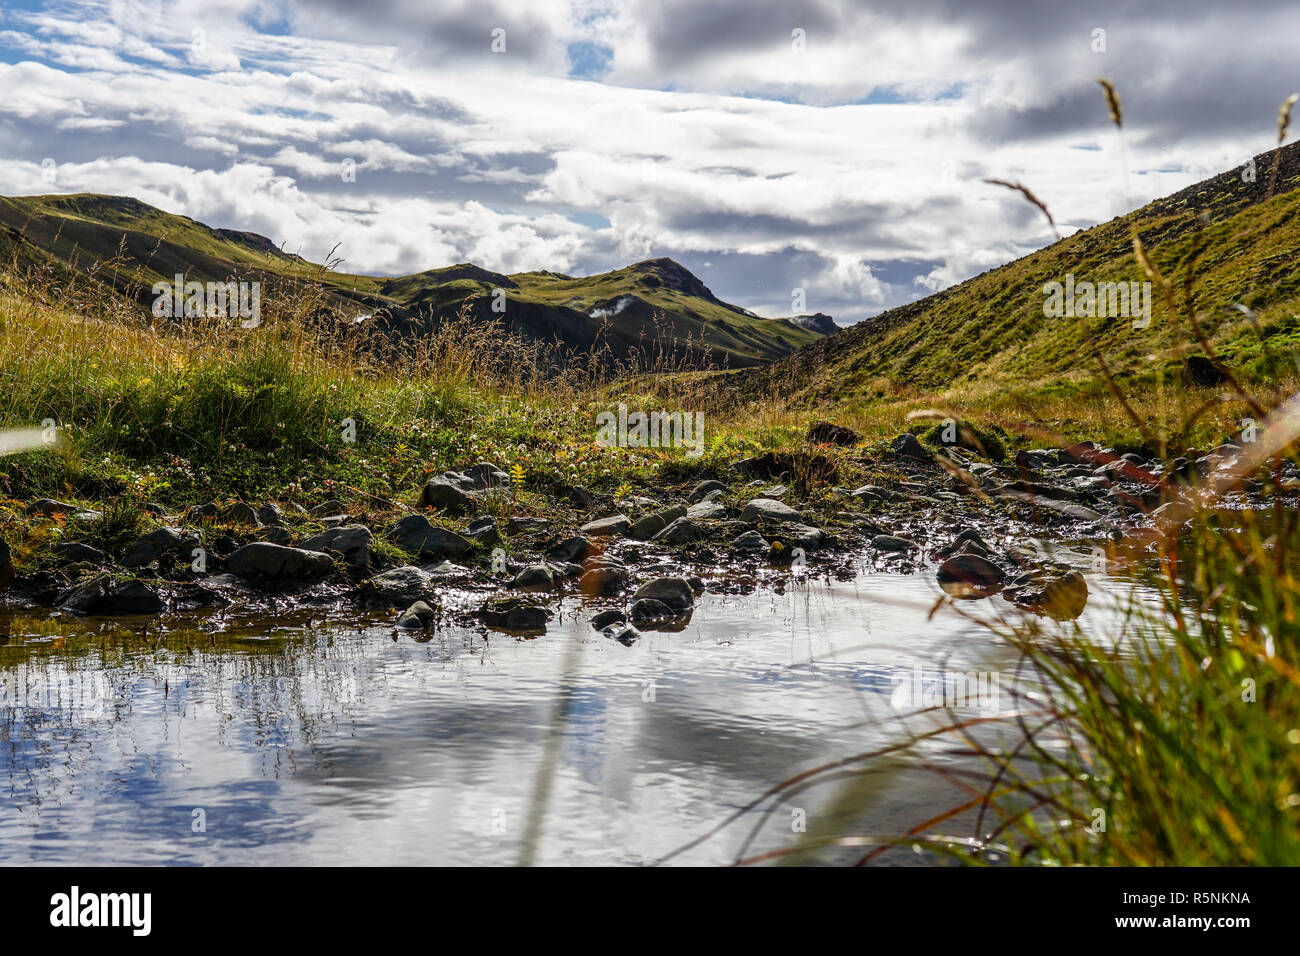 A Glaciel River runs through an Icelandic Landscape. Stock Photo